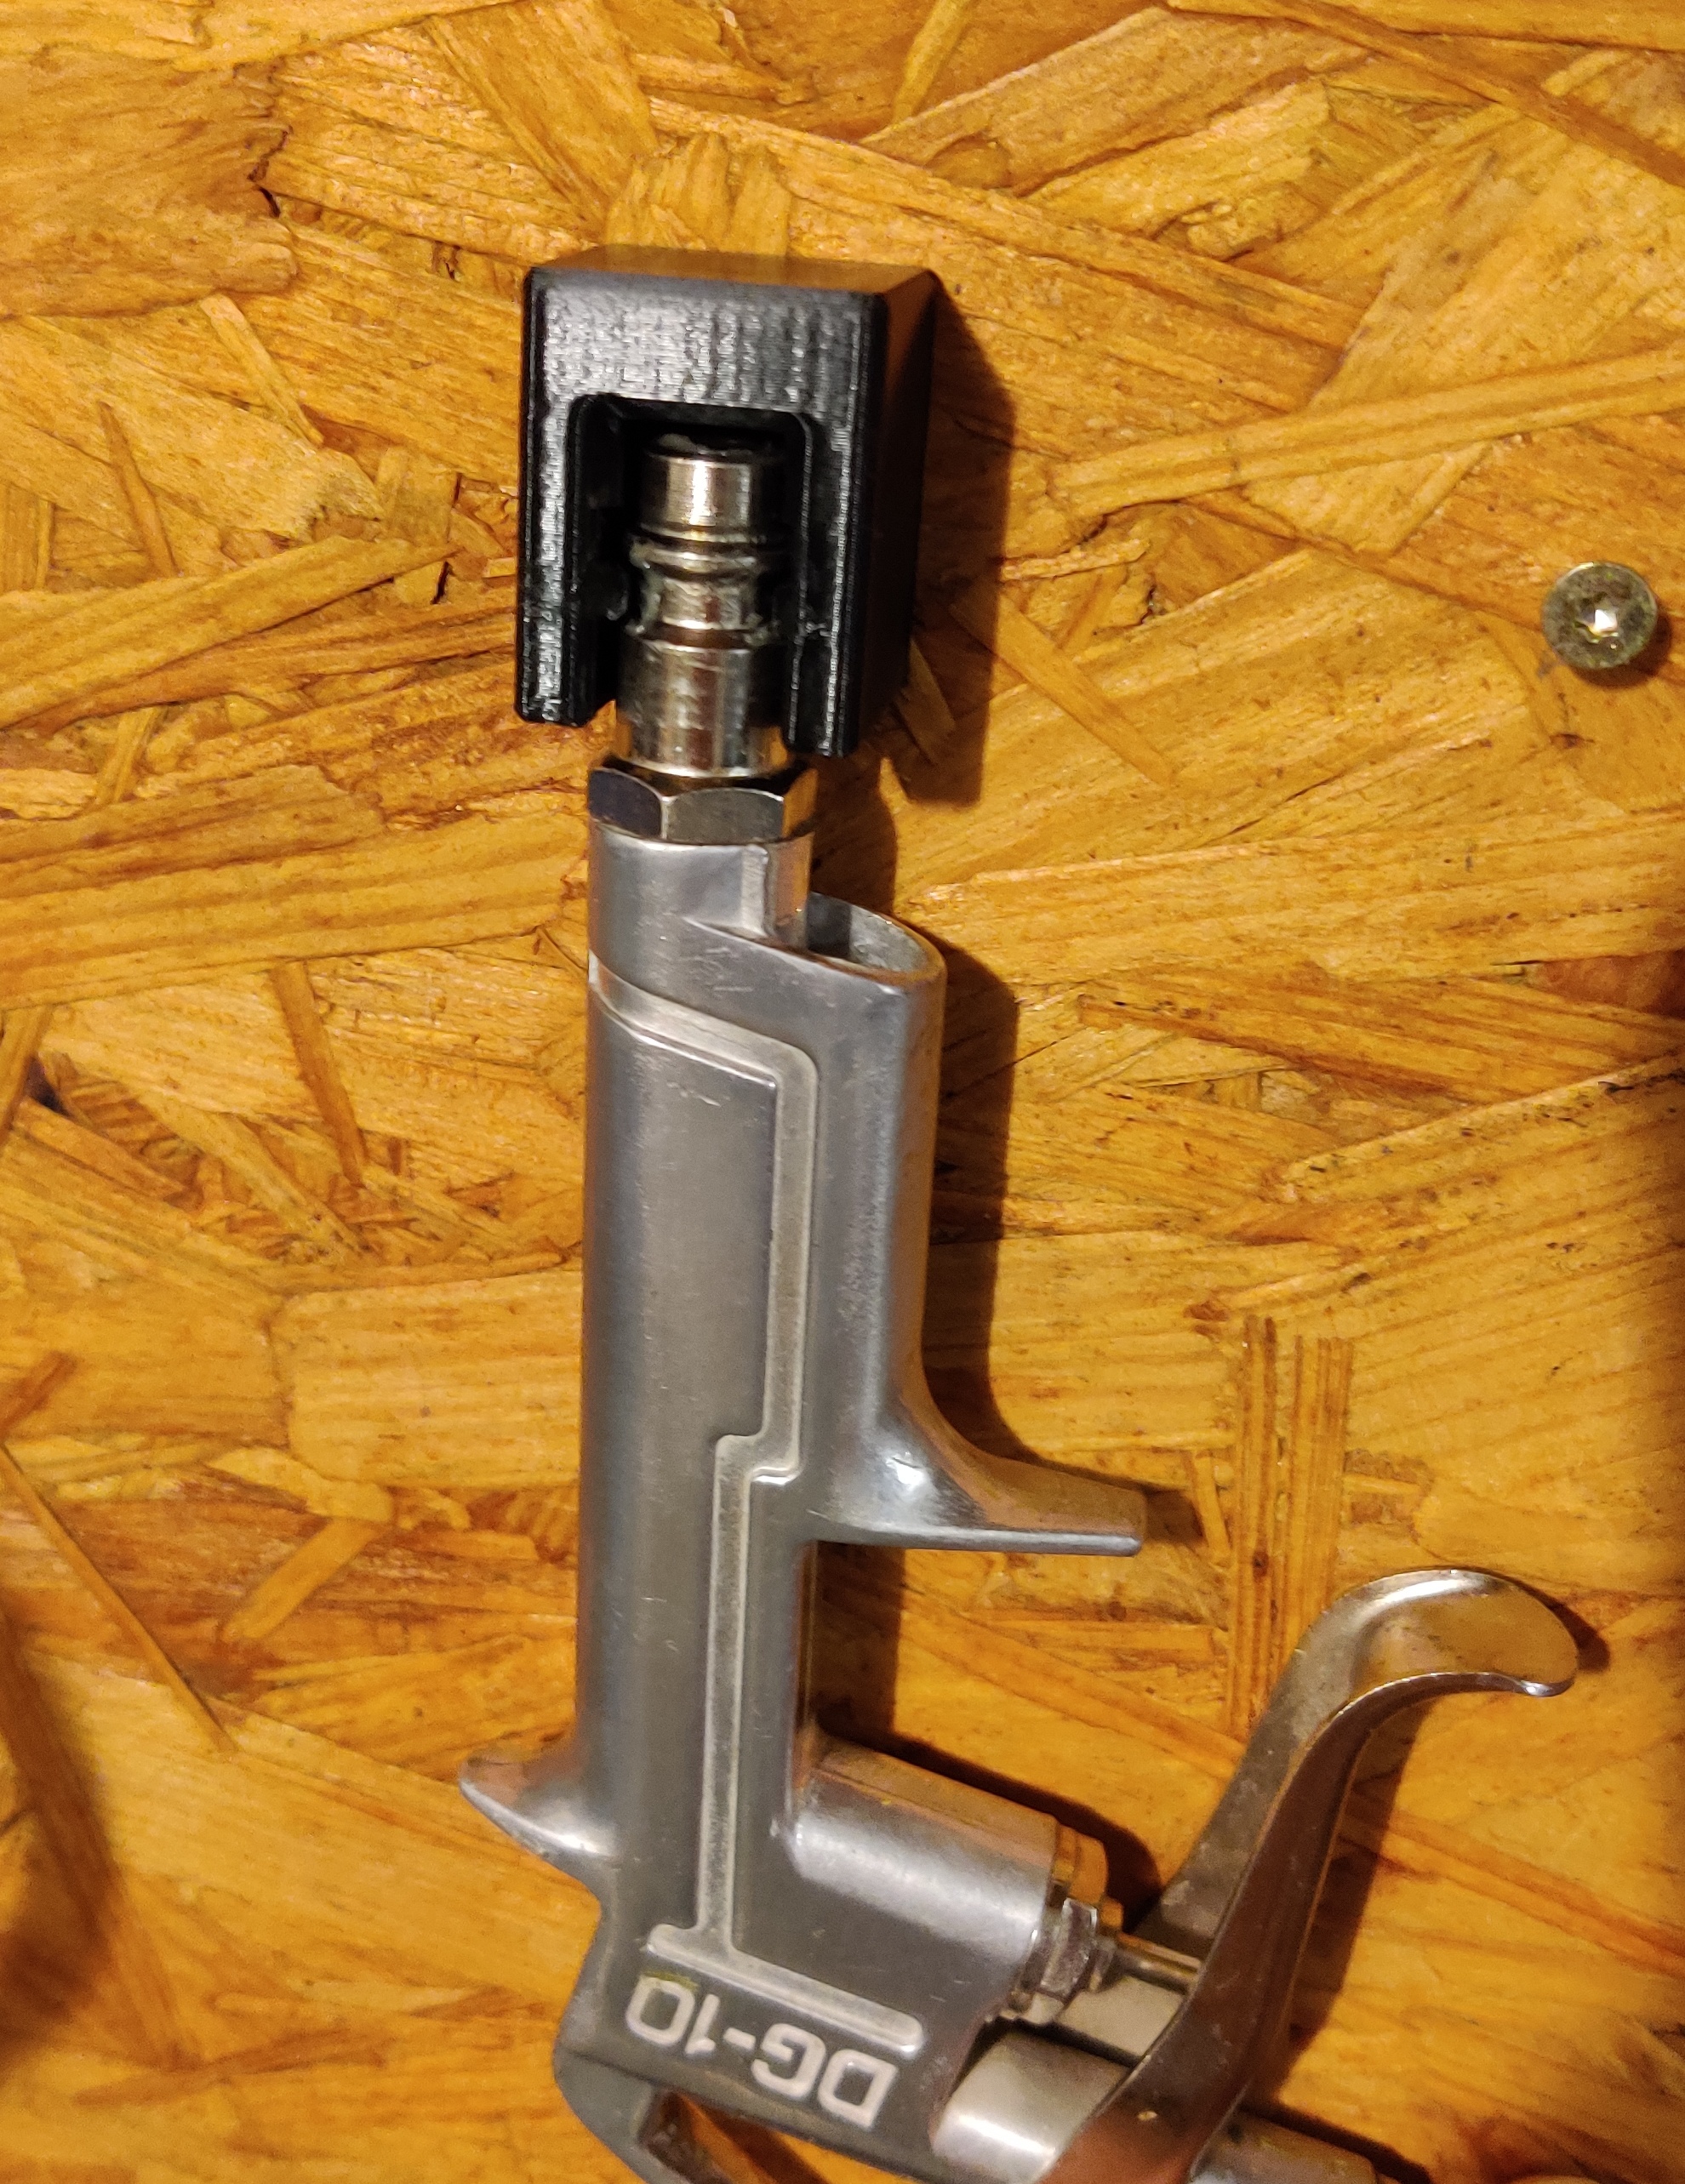 Air pressure tool/hose hanger